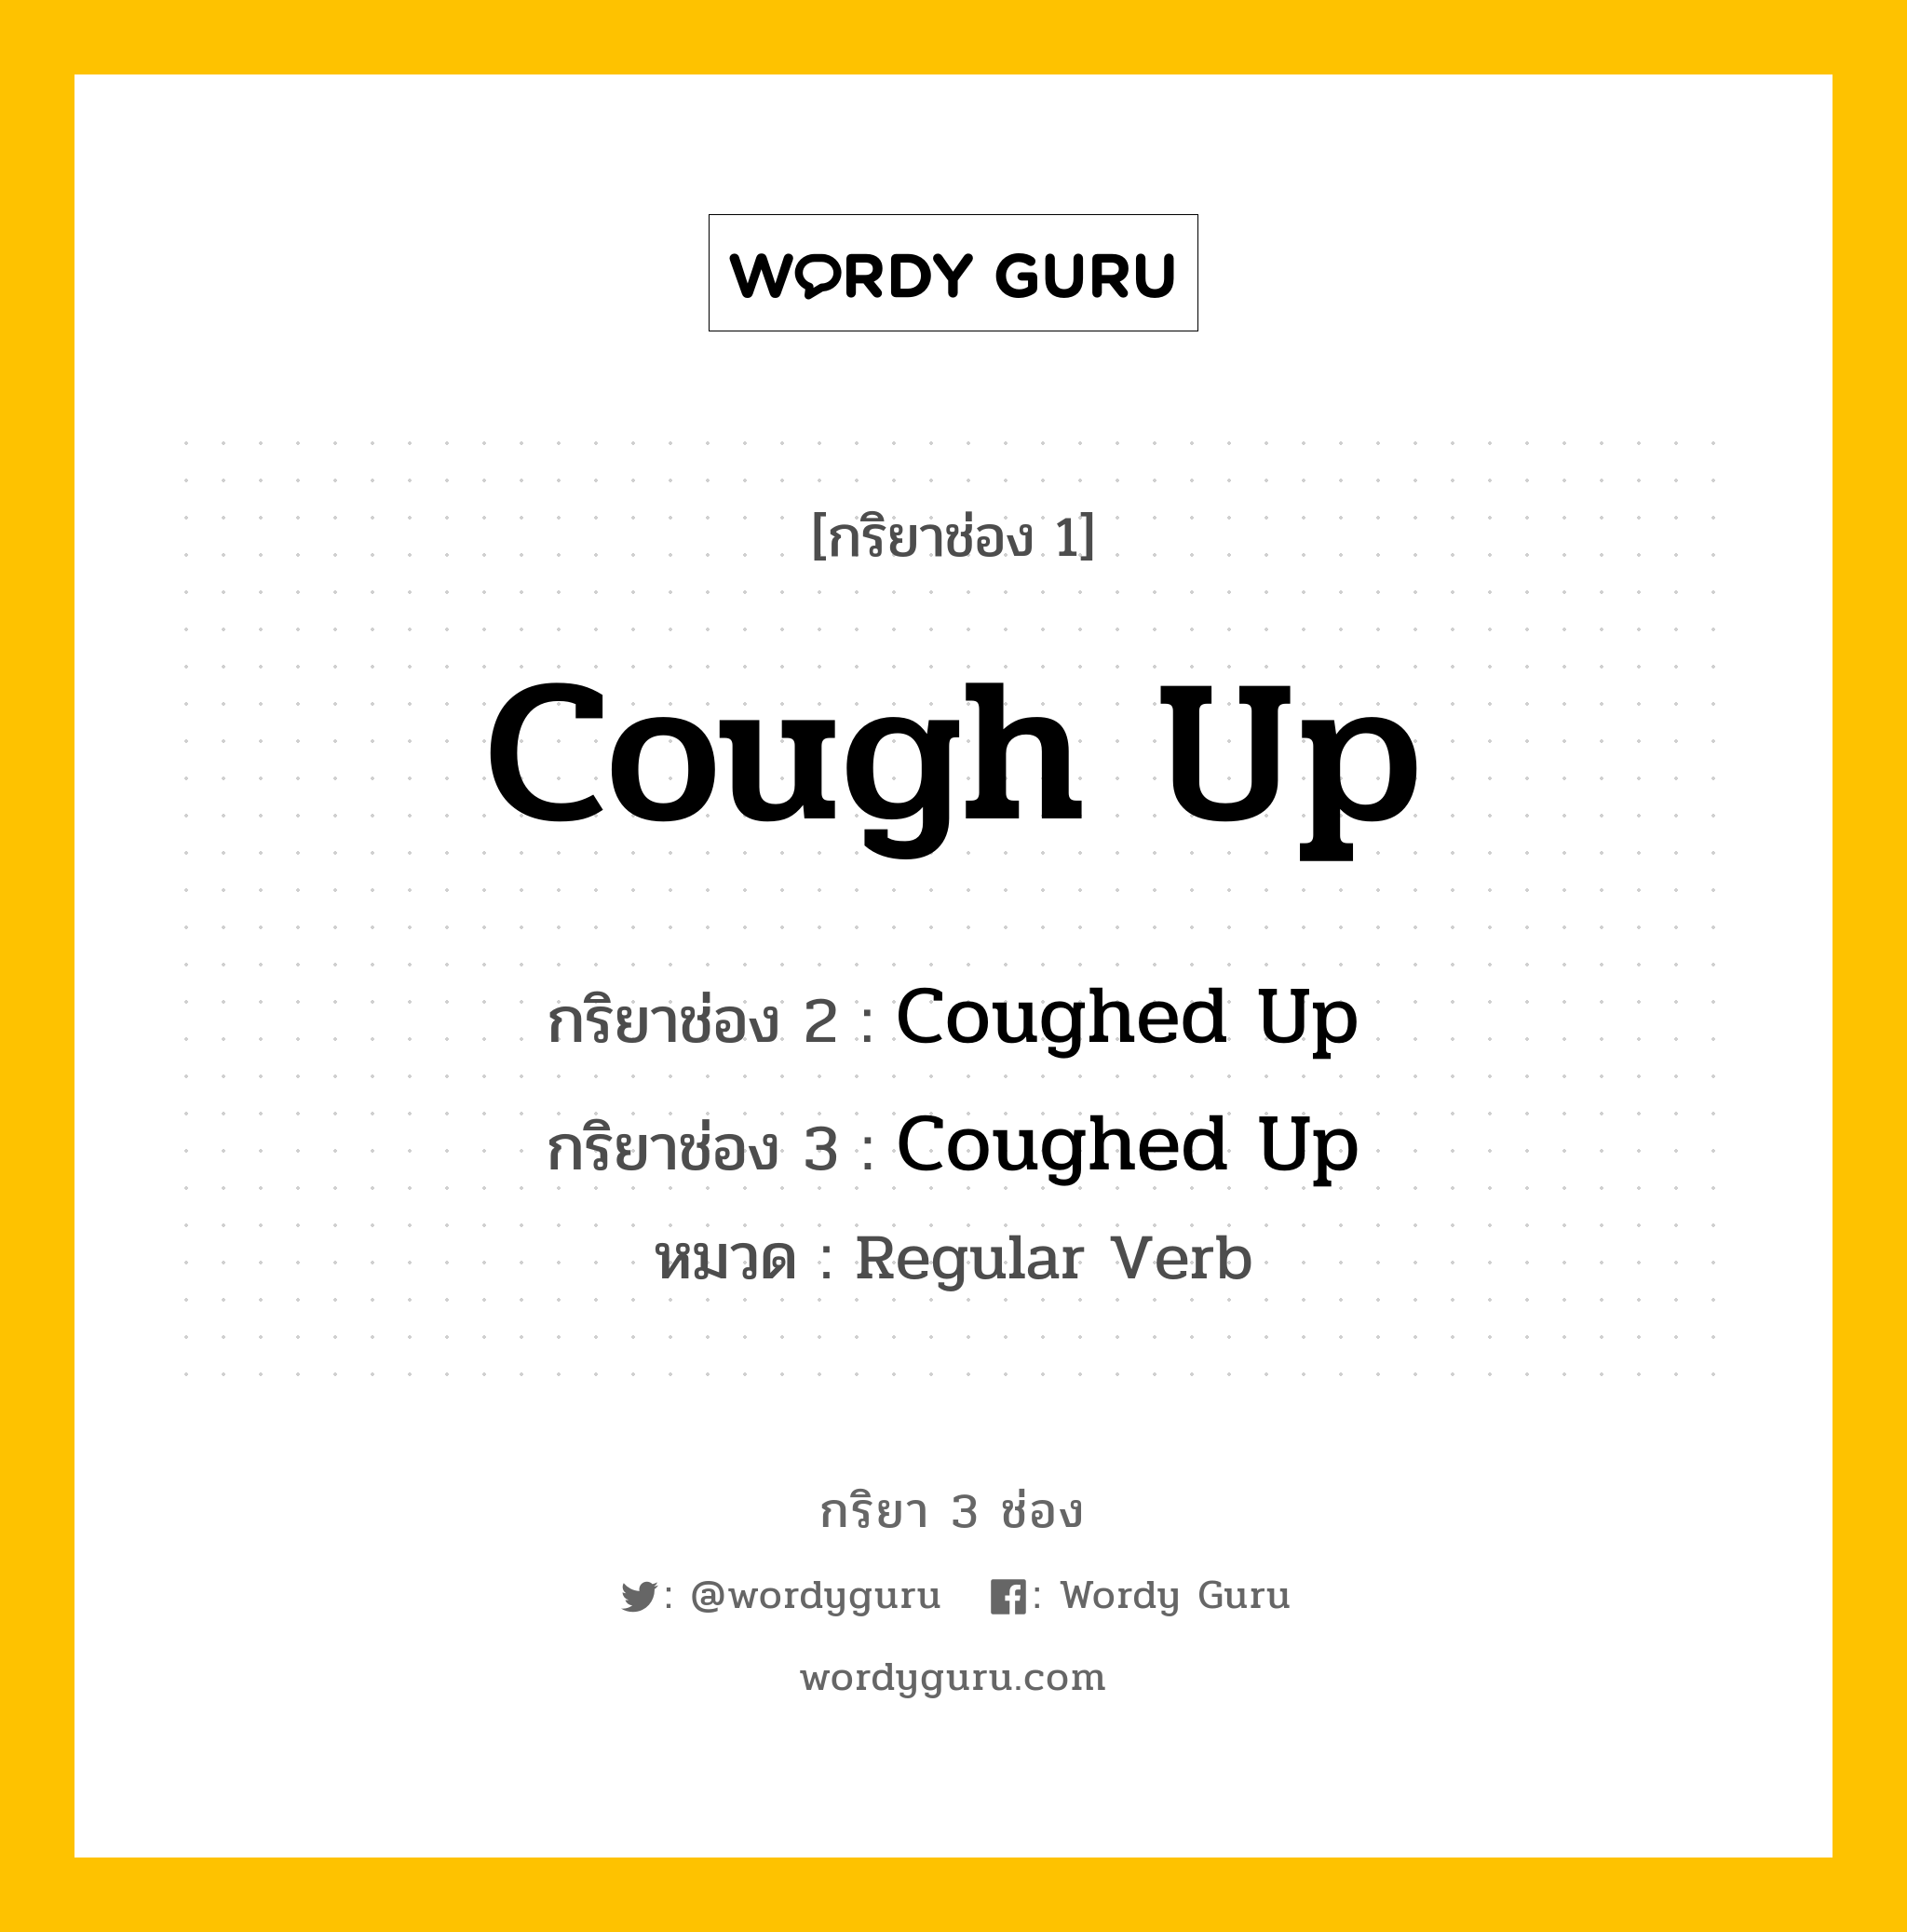 กริยา 3 ช่อง: Cough Up ช่อง 2 Cough Up ช่อง 3 คืออะไร, กริยาช่อง 1 Cough Up กริยาช่อง 2 Coughed Up กริยาช่อง 3 Coughed Up หมวด Regular Verb หมวด Regular Verb